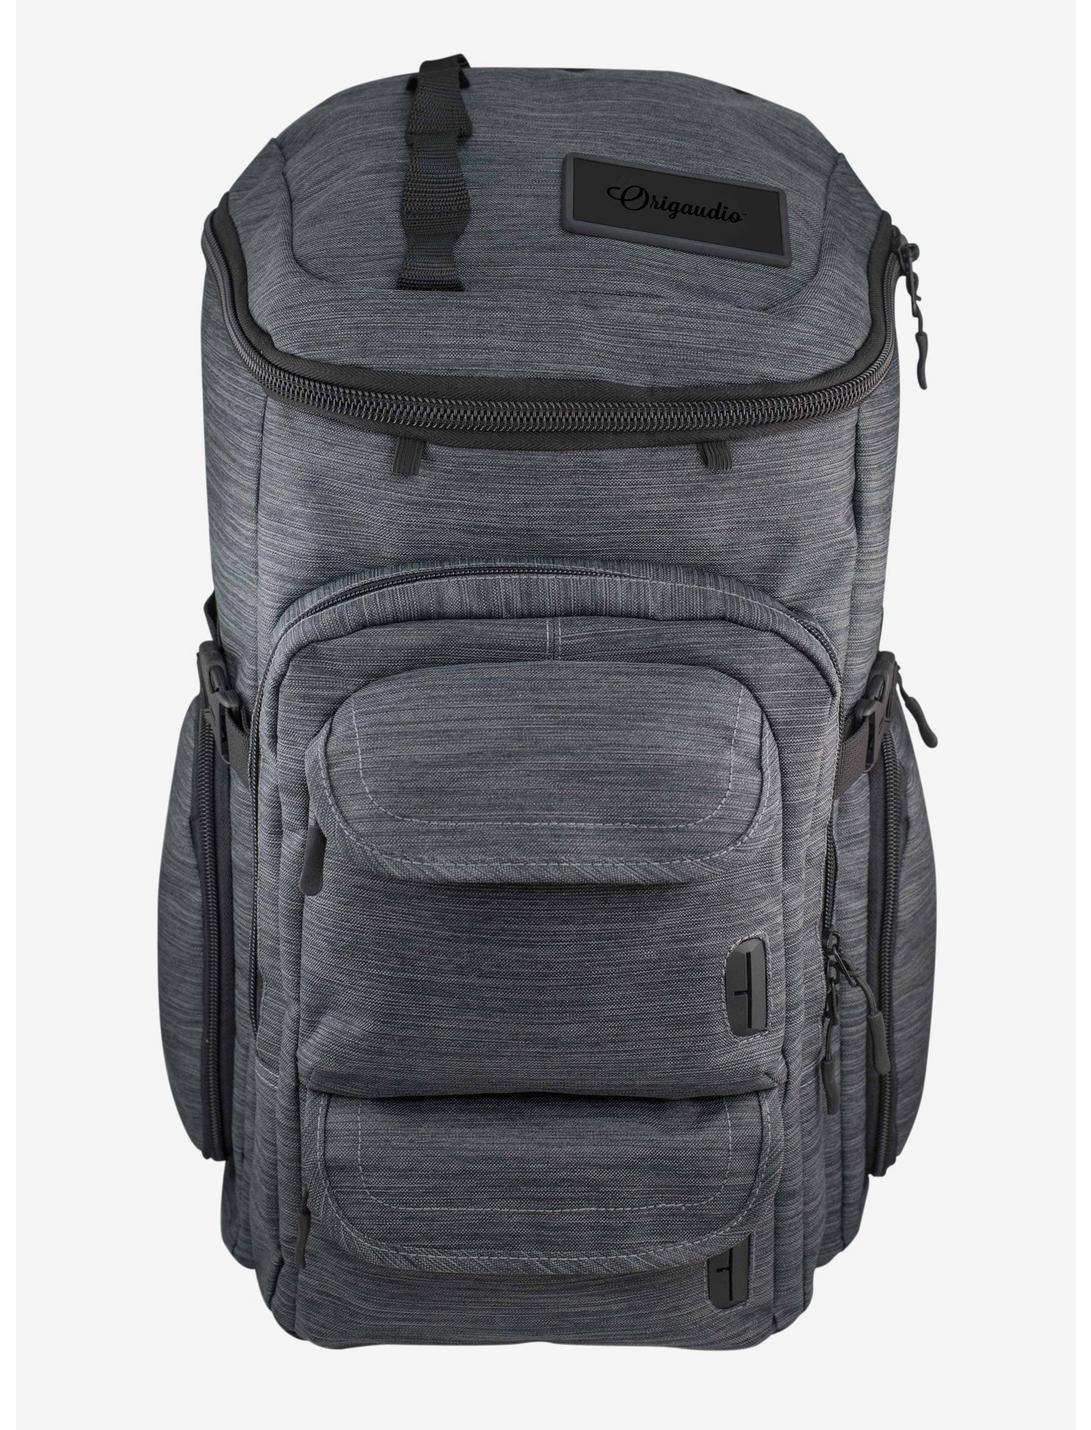 Mission Backpack - Grey, , hi-res